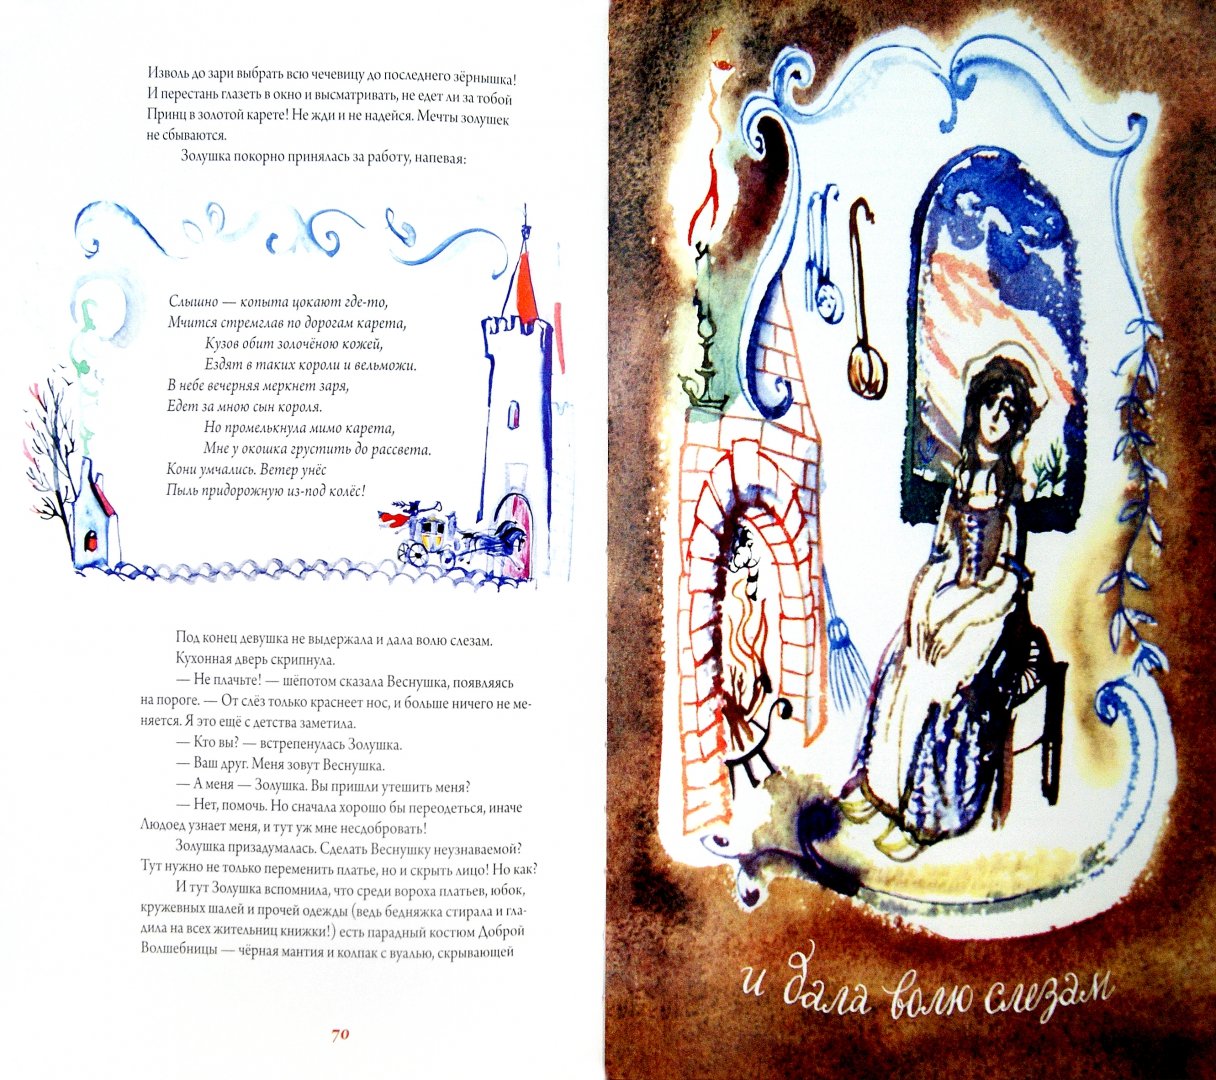 Иллюстрация 1 из 40 для Счастливый конец. Волшебная сказка - Екатерина Борисова | Лабиринт - книги. Источник: Лабиринт